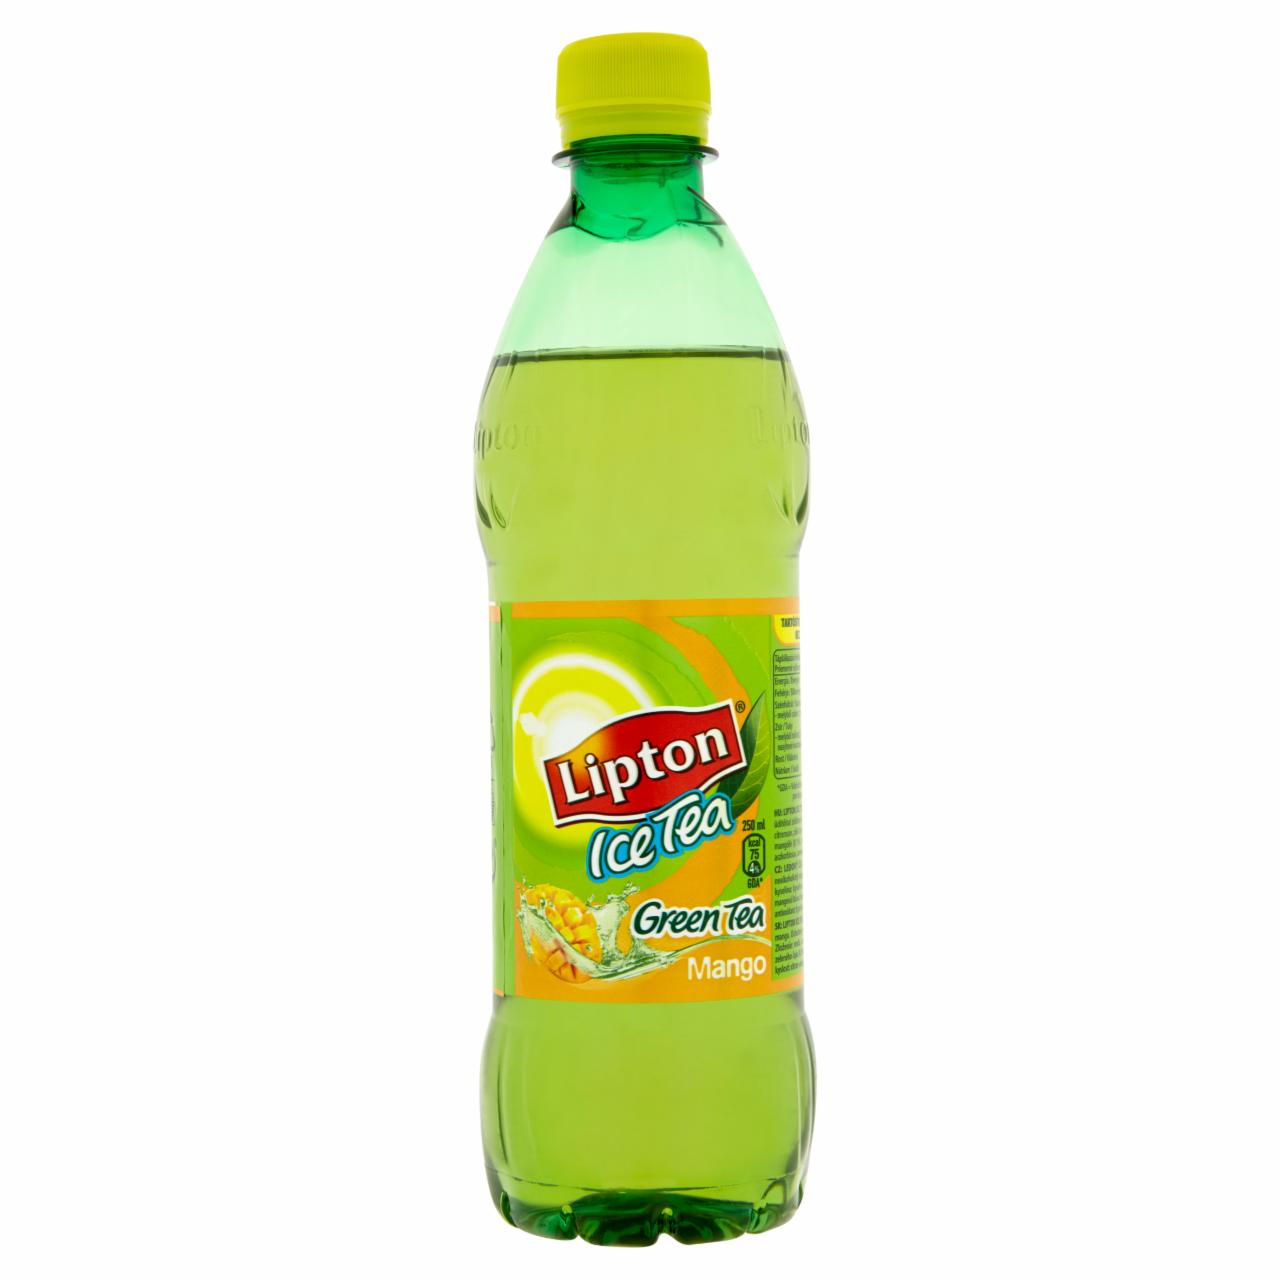 Képek - Lipton Ice Tea mangoízű szénsavmentes üdítőital zöldtea kivonattal 500 ml